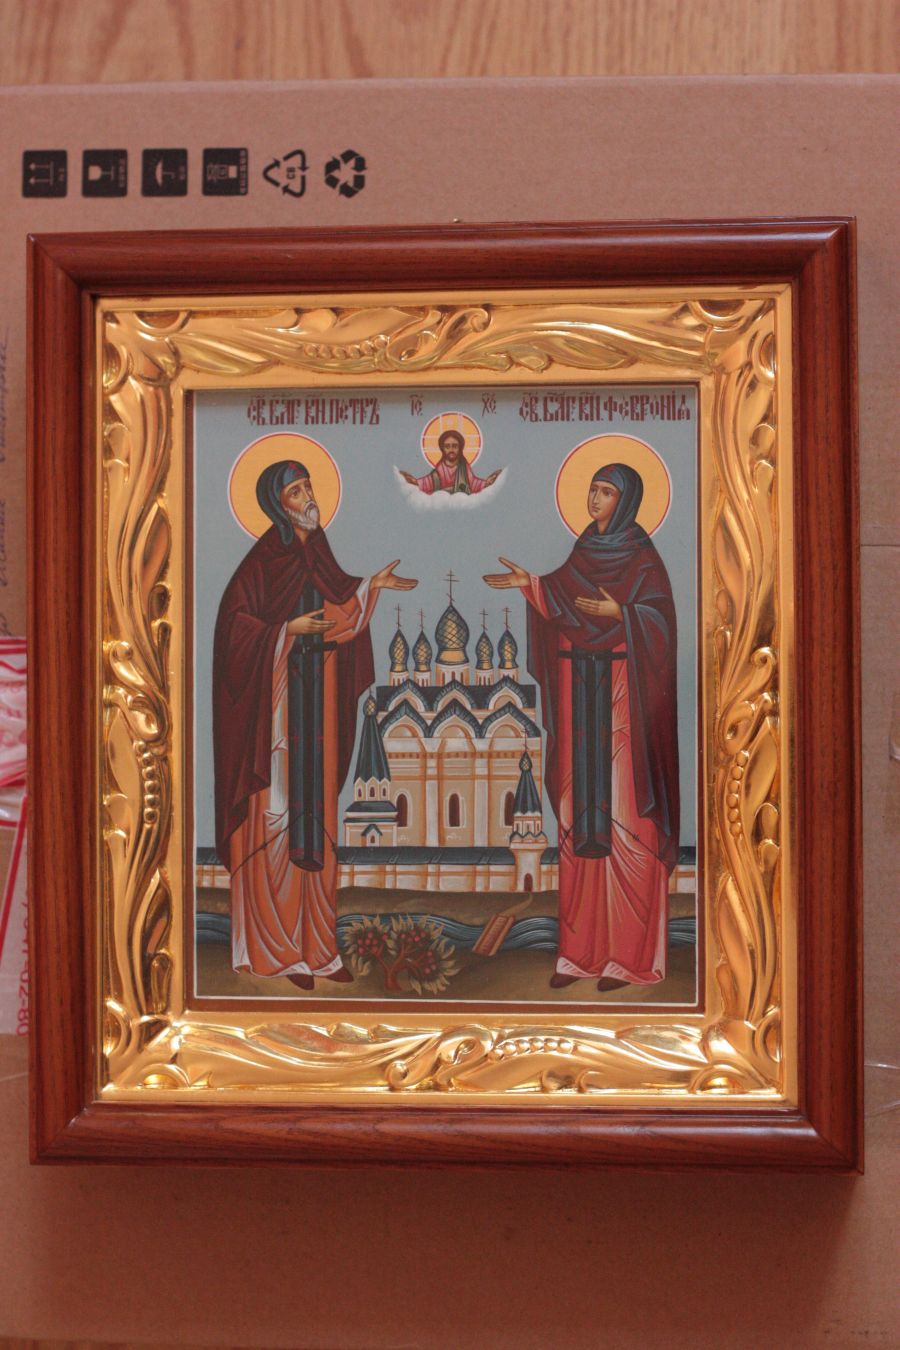 Св. Петр и Феврония